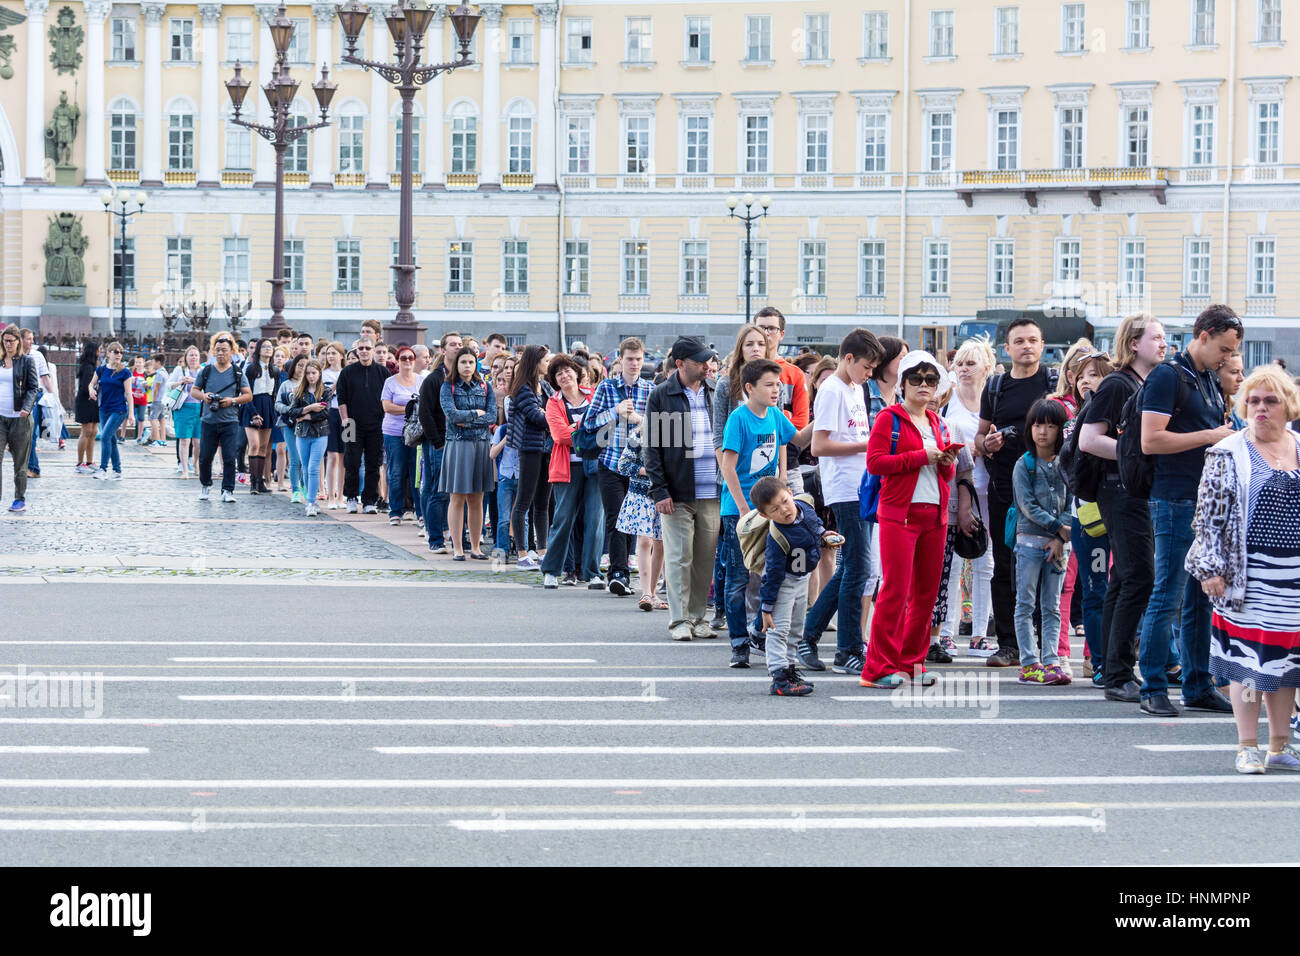 ST. PETERSBURG, Russie - le 12 juillet 2016 : les touristes sont dans la file d'attente de longues heures dans le Musée de l'Ermitage, Saint-Pétersbourg, Russie Banque D'Images